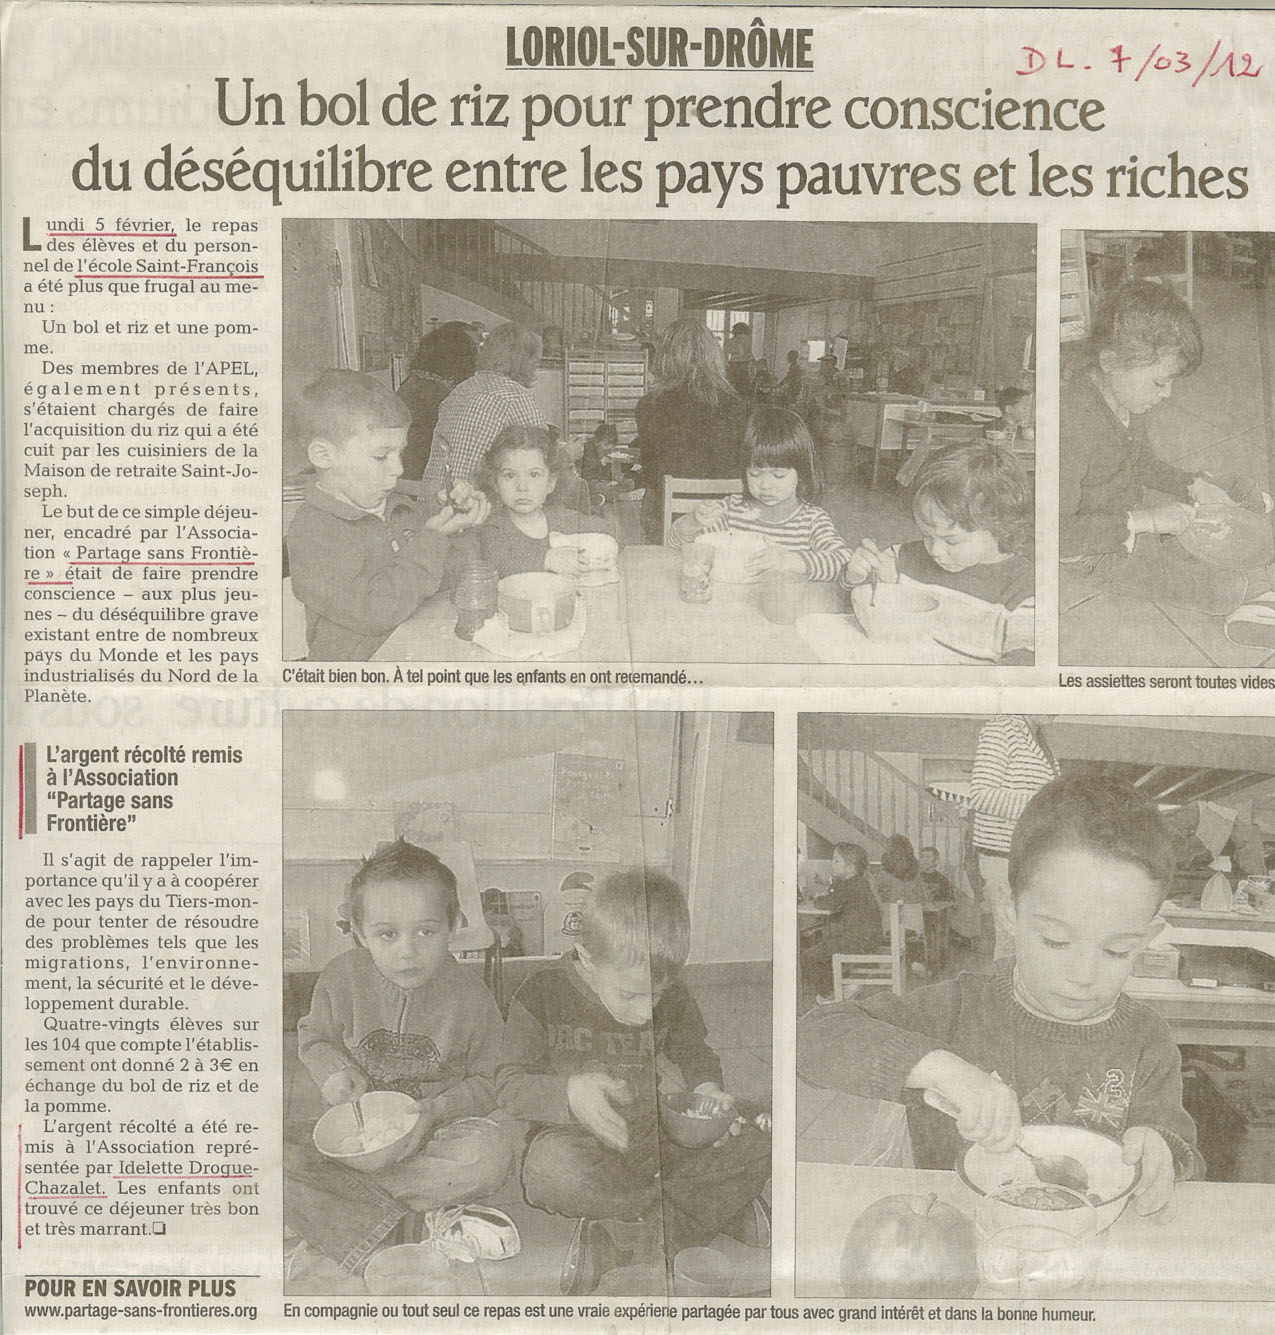 Intervention d’Idelette Drogue-Chazalet dans le cadre du bol de riz de l’école Saint-François de Loriol sur Drôme, le 06 mars 2012, la presse en parle.